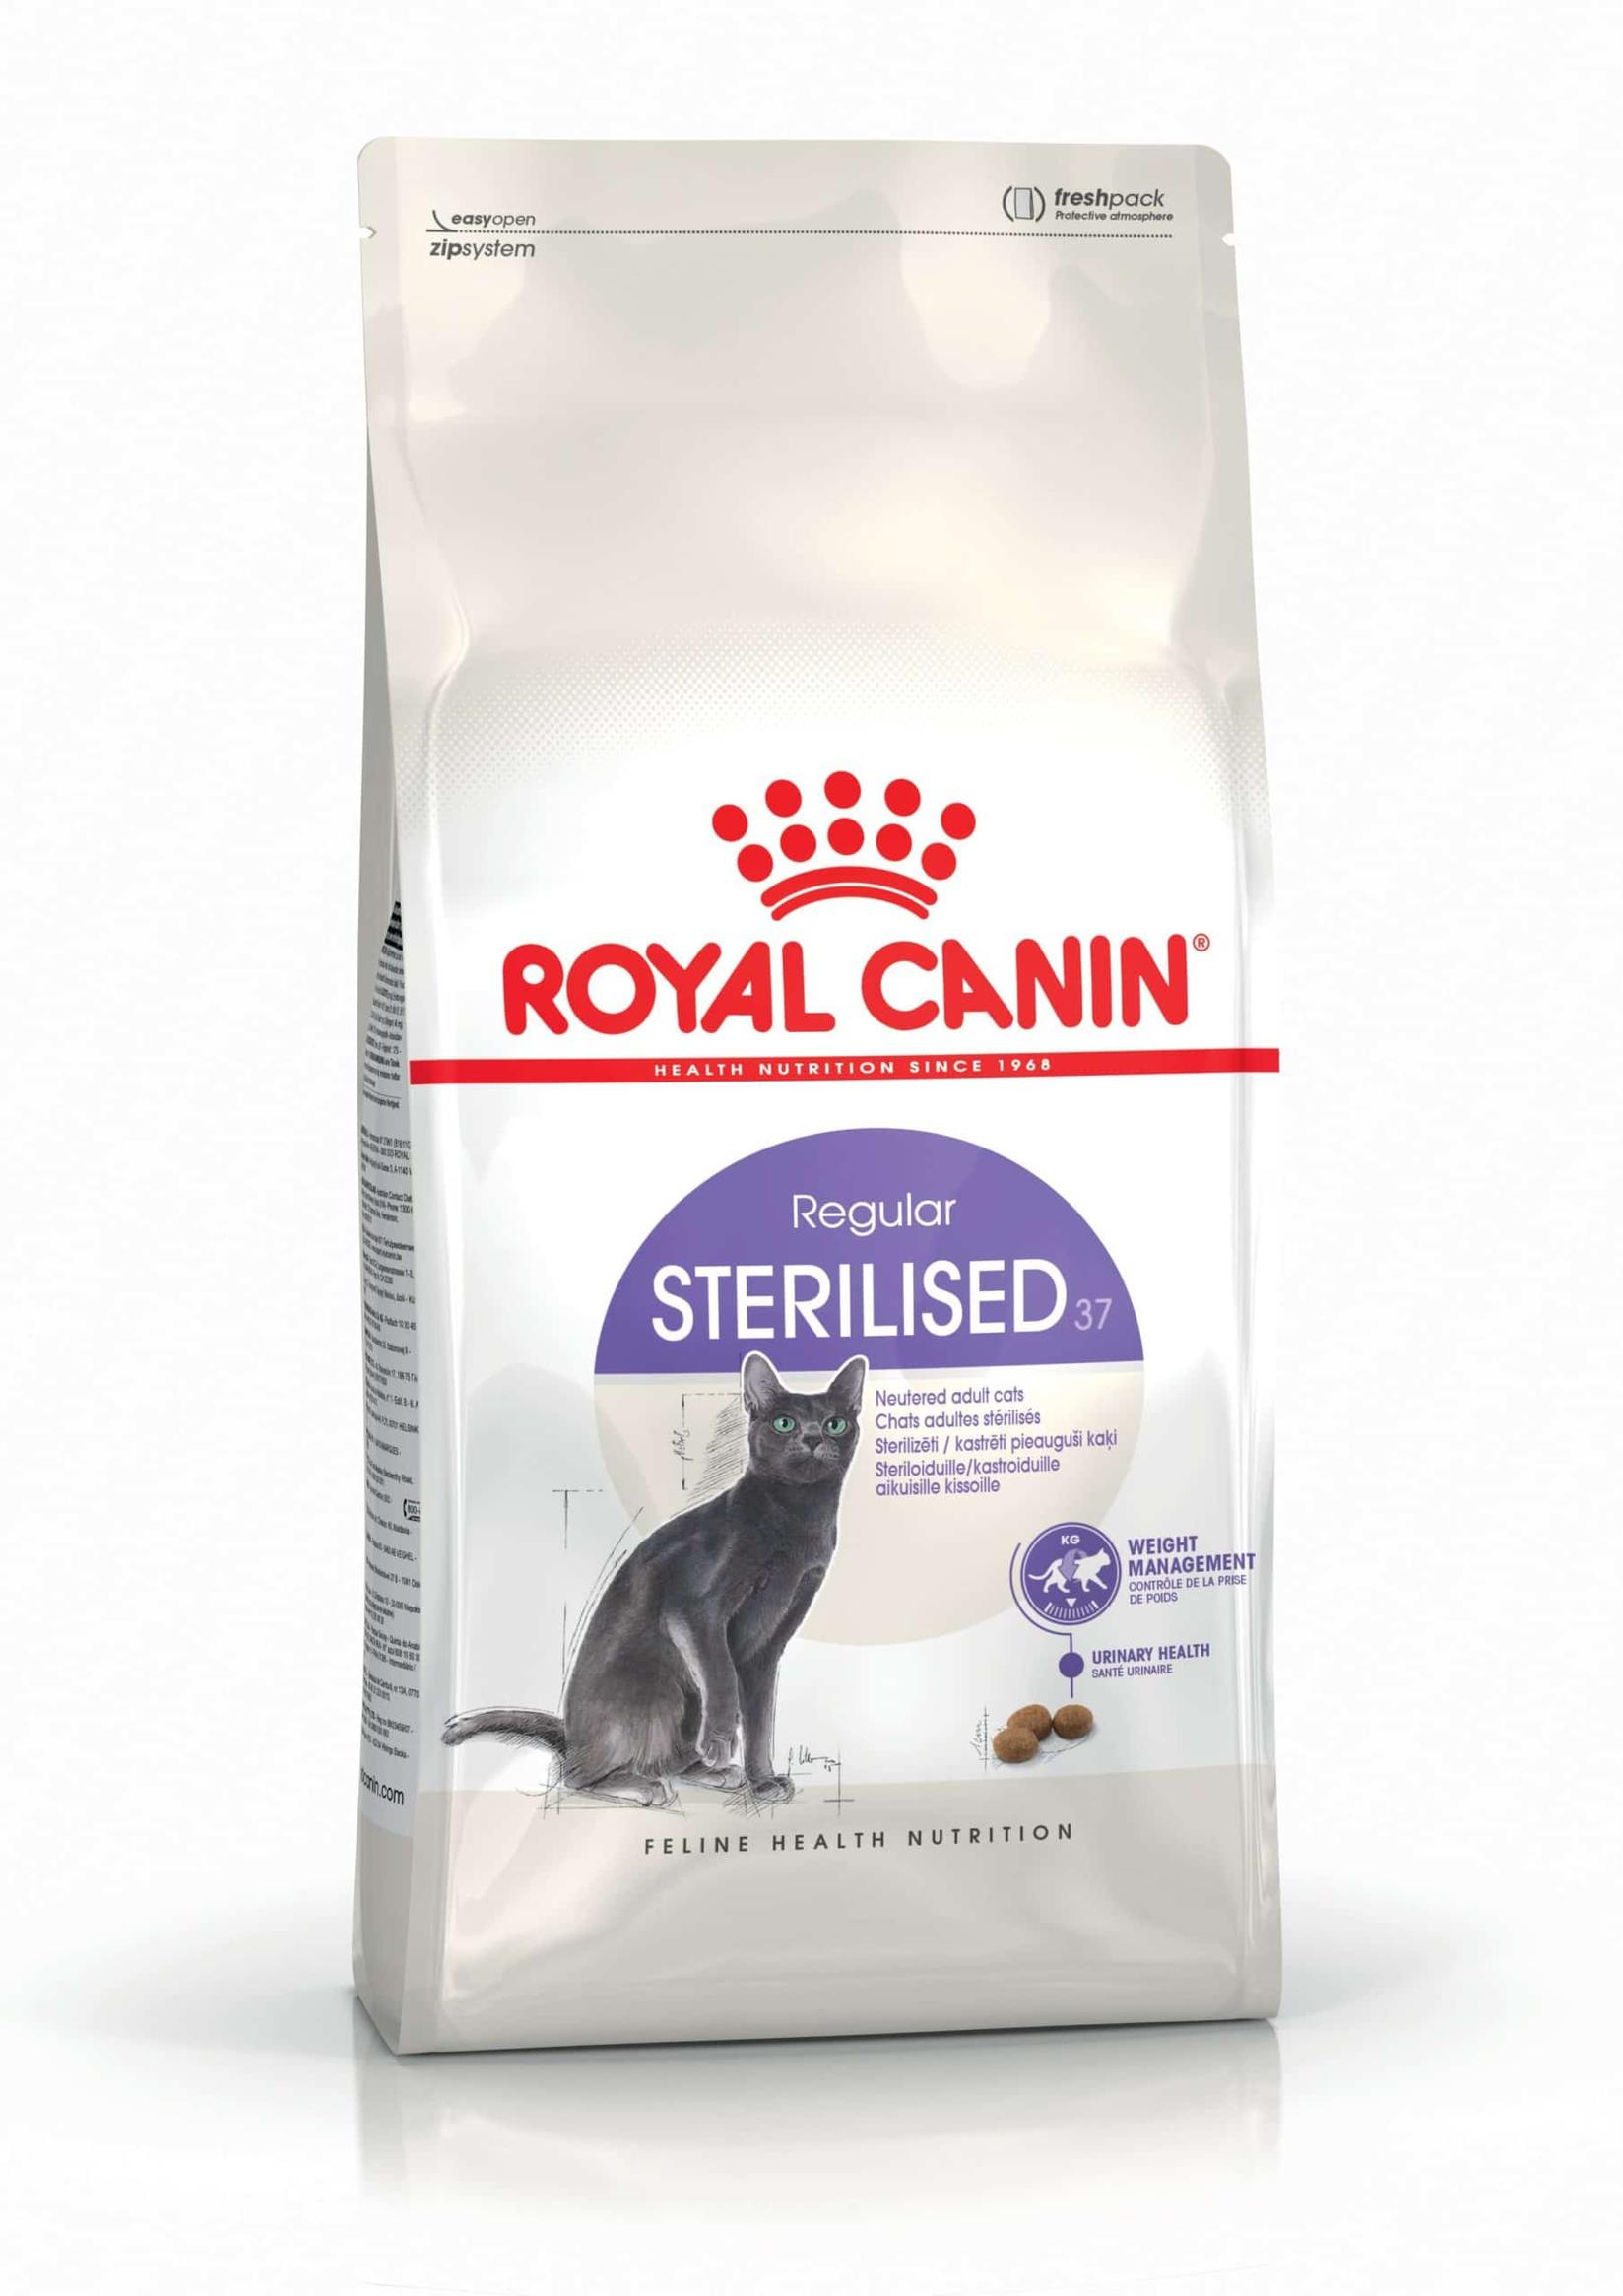 ROYAL CANIN Suva hrana za kastrirane mačke koje imaju sklonost ka gojenju Sterilised 37 4kg